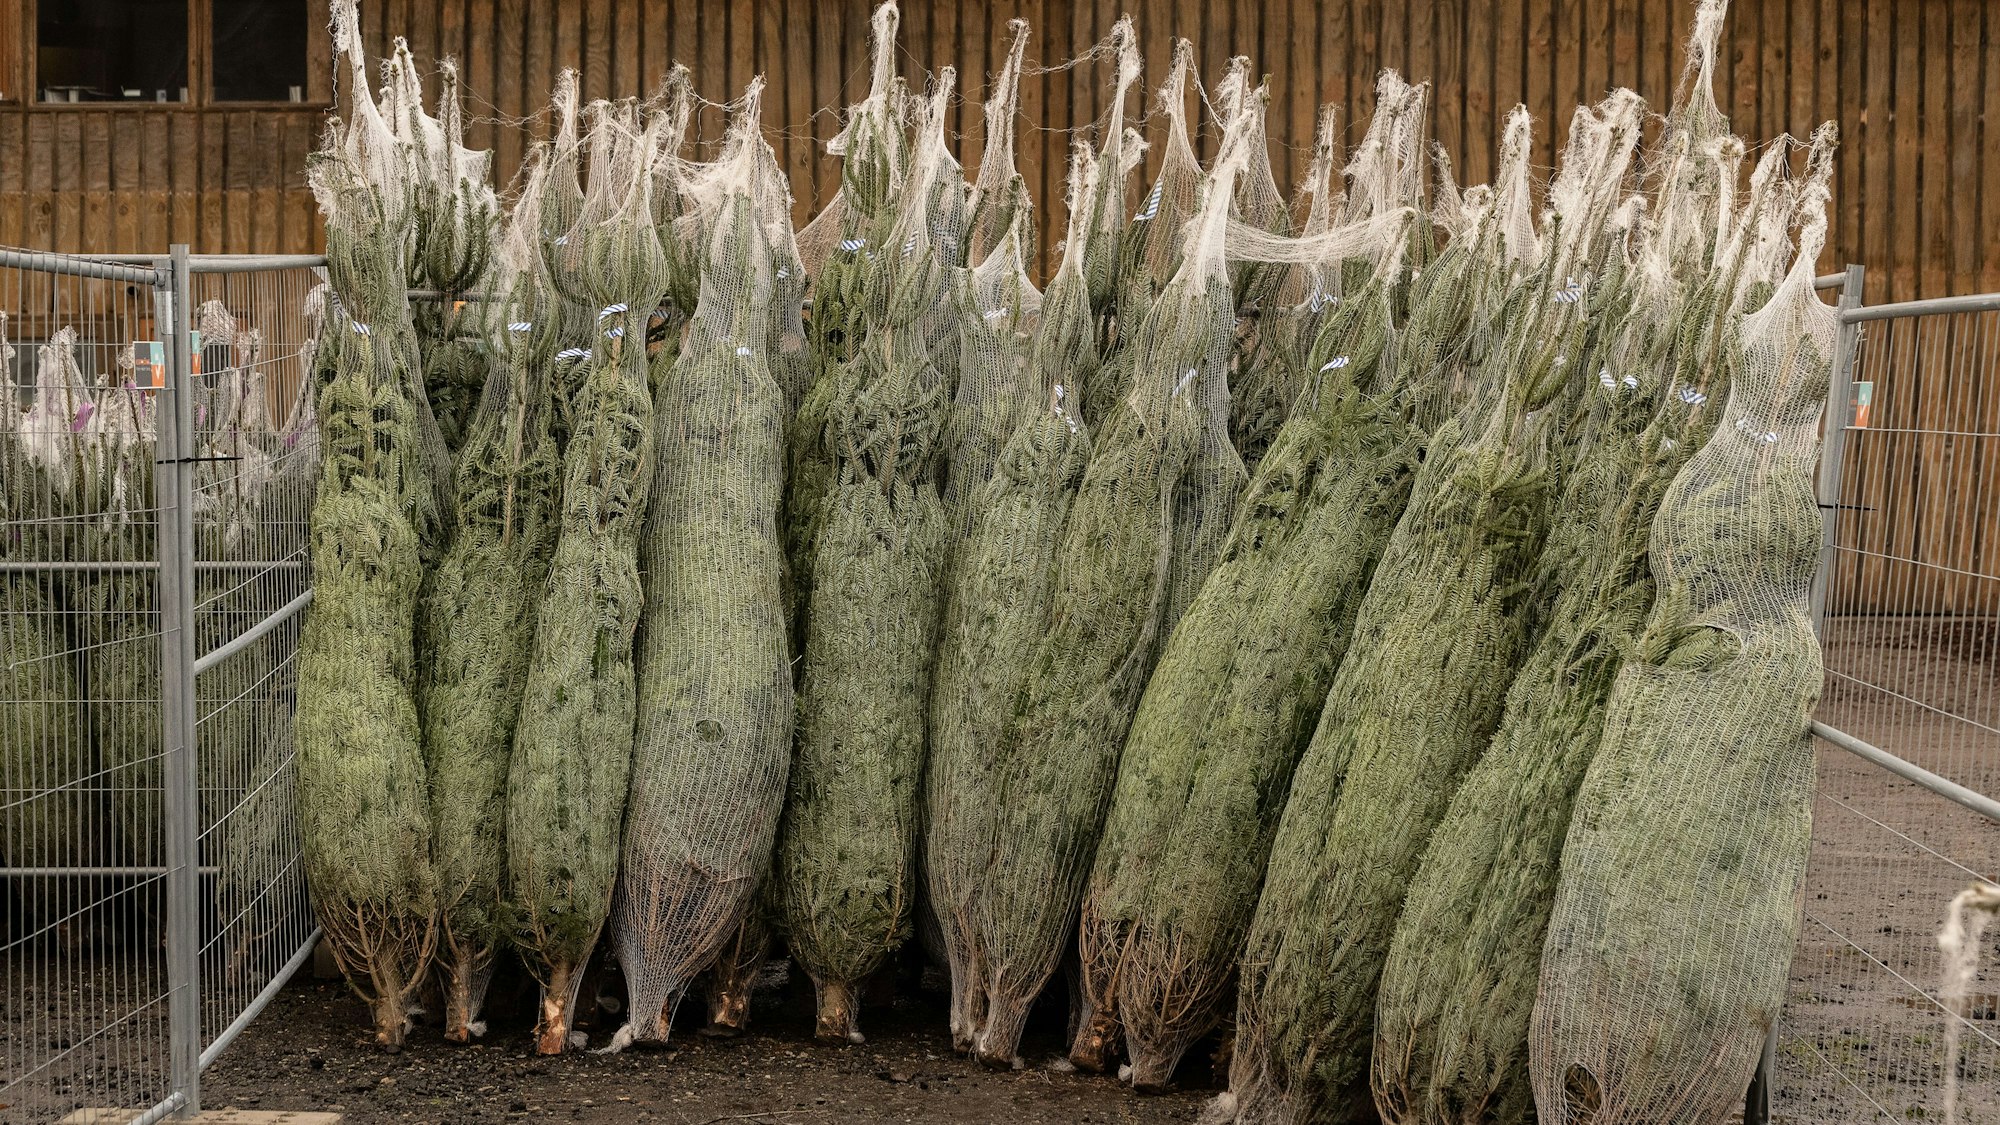 Abgepackte Weihnachtsbäume stehen zum Verkauf bereits – jetzt wurden rund 50 Bäume in Duisburg gestohlen.